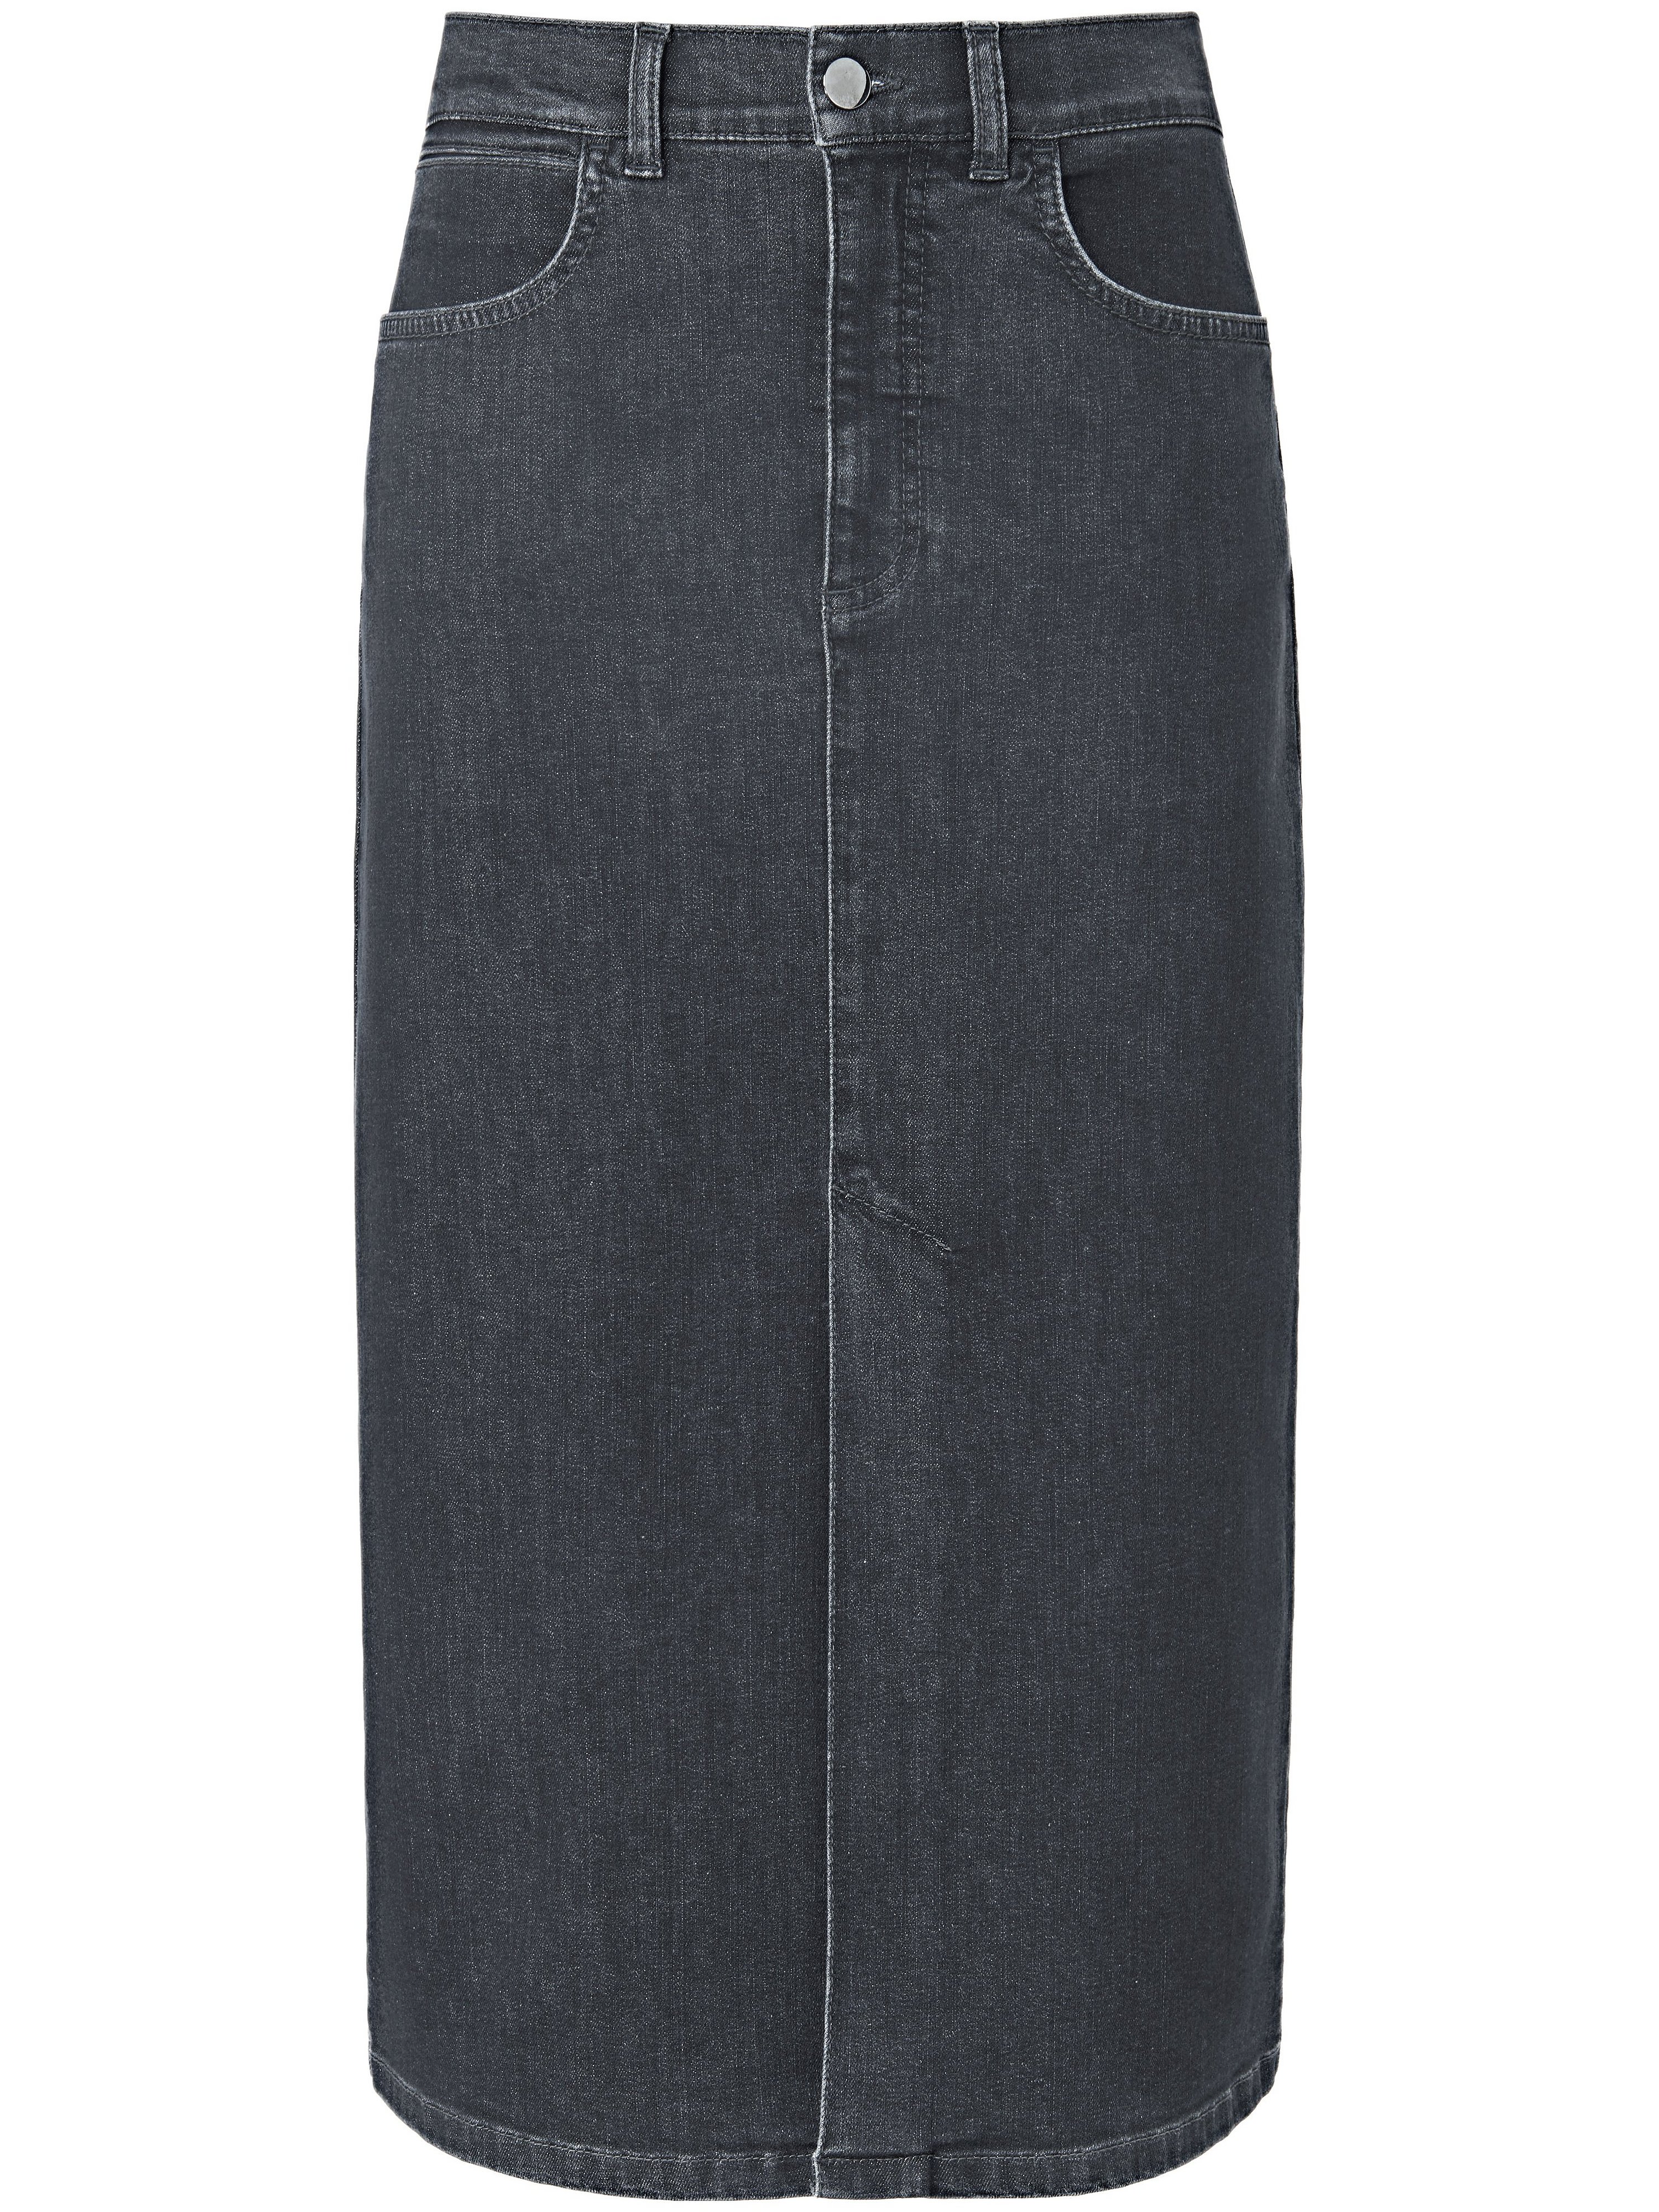 La jupe jean  portray berlin gris taille 46